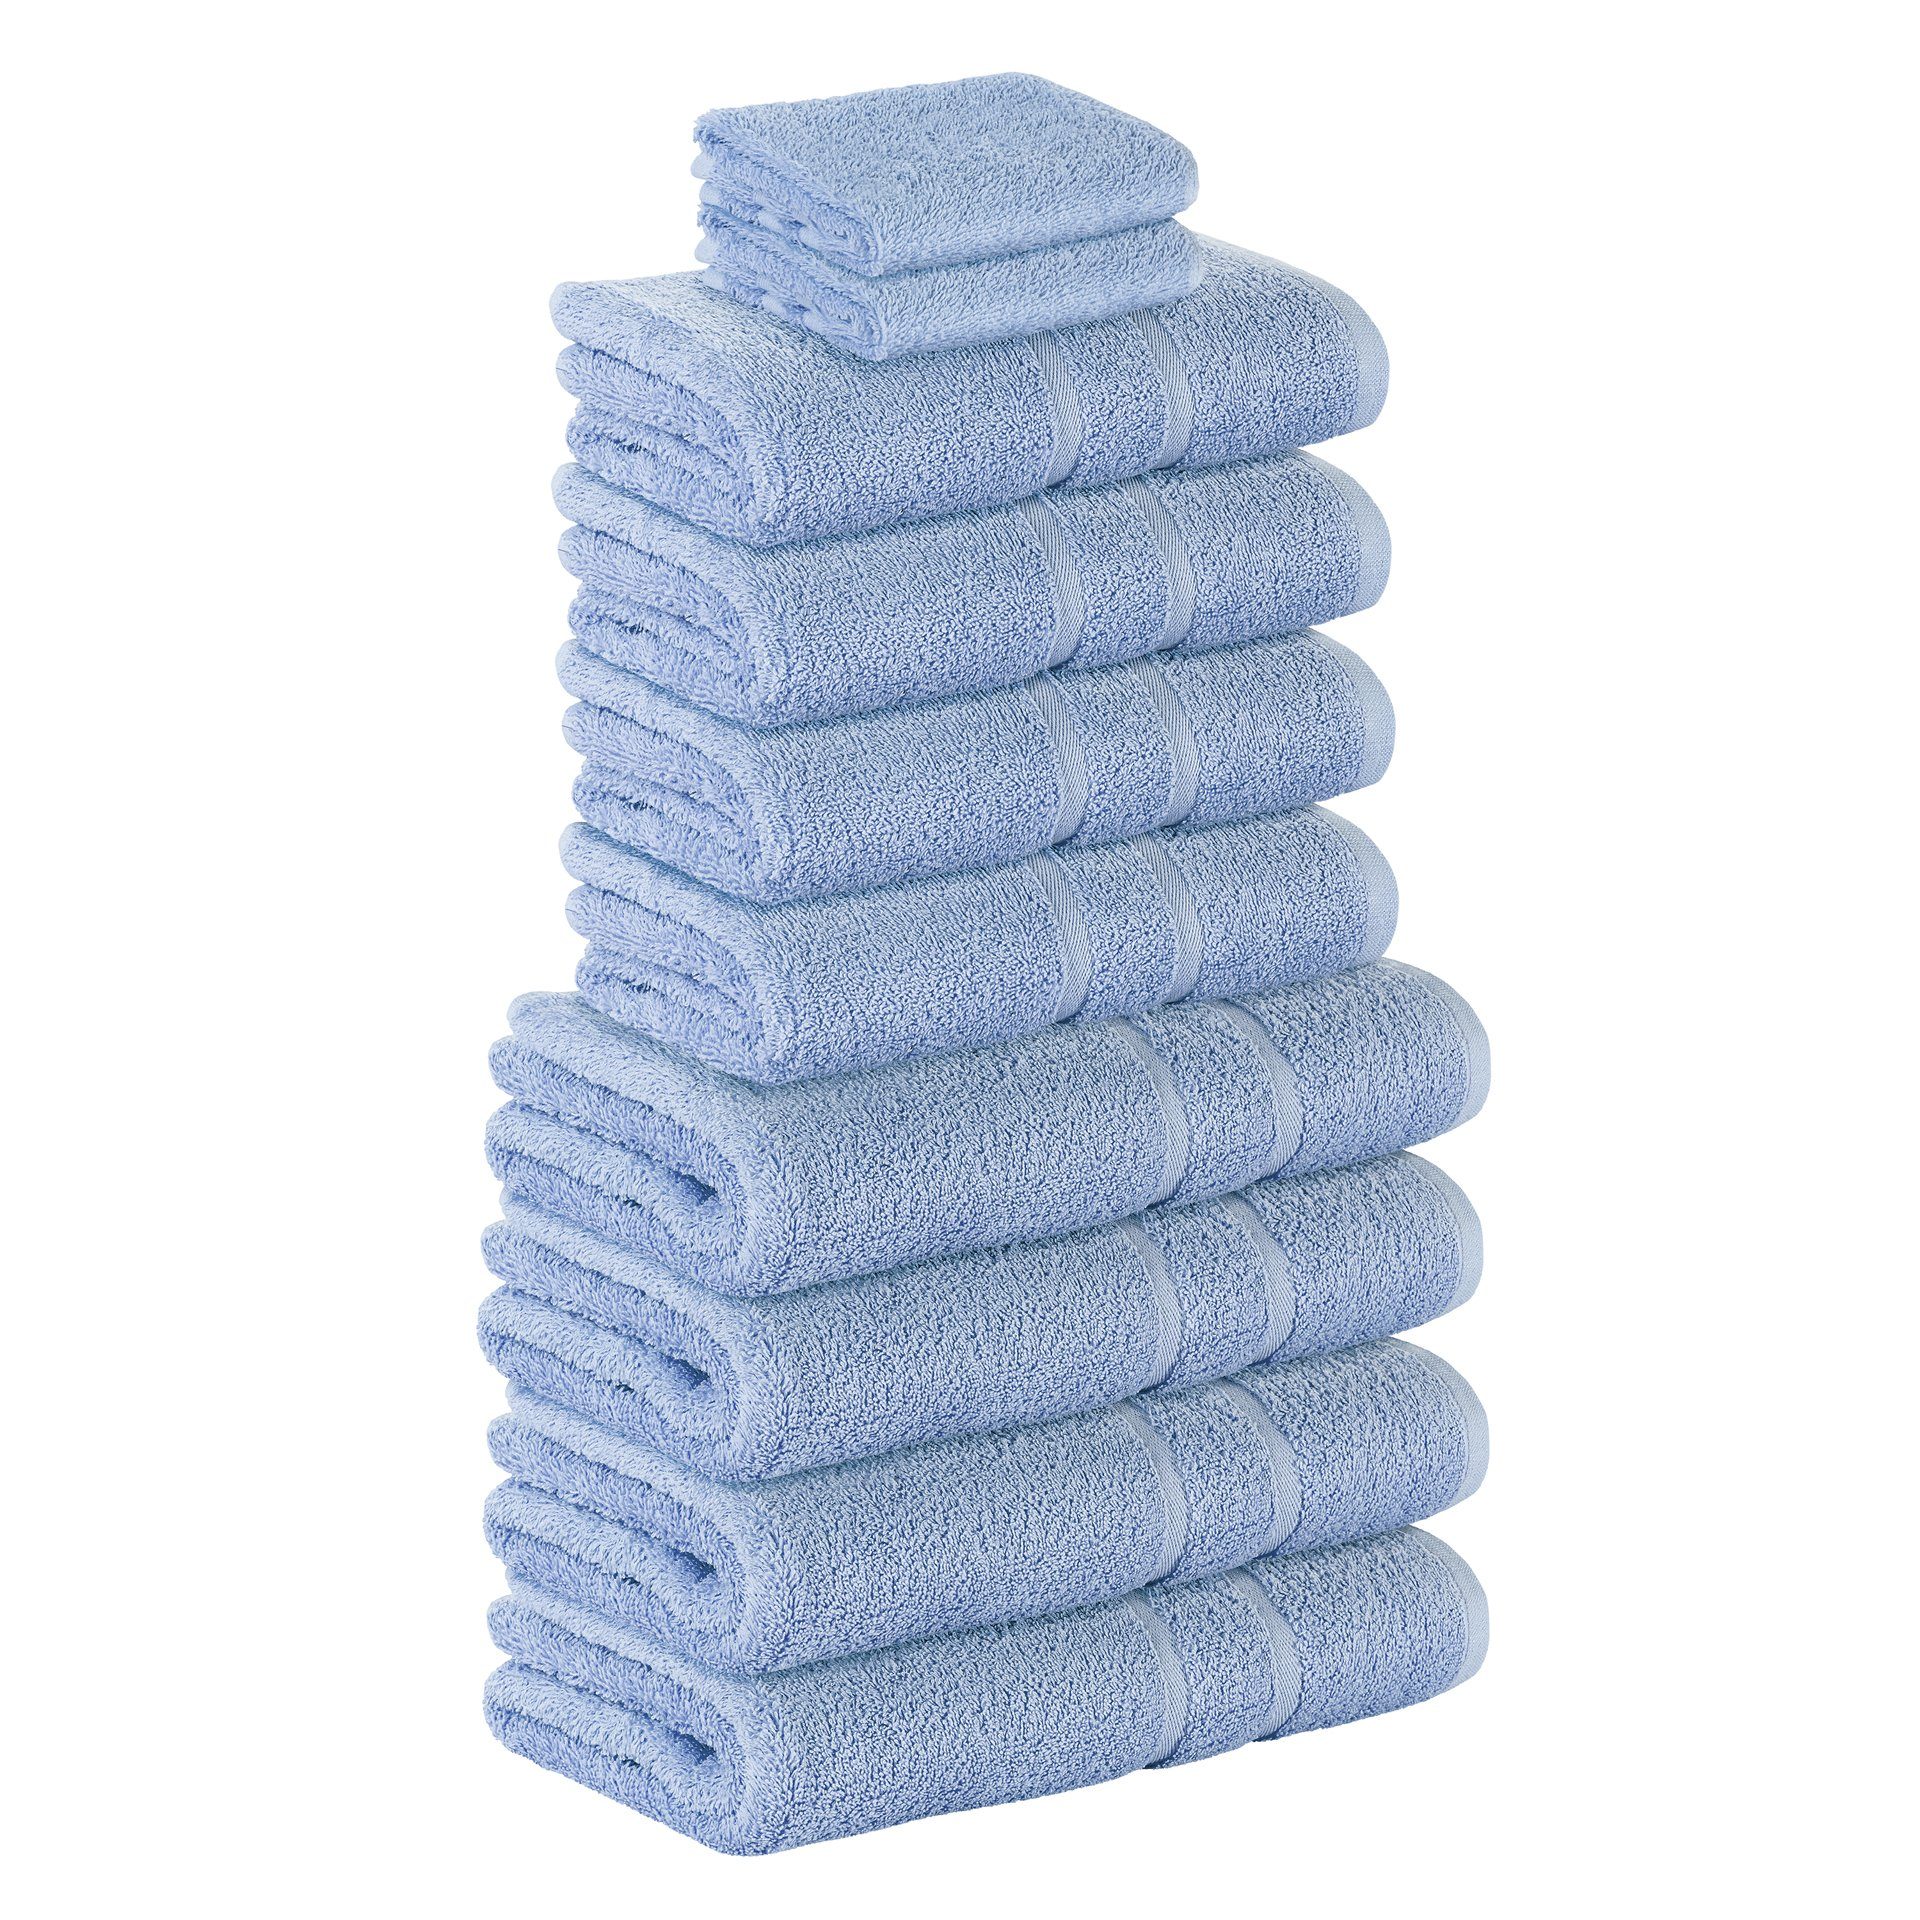 StickandShine Handtuch Set 2x Gästehandtuch 4x Handtücher 4x Duschtücher als SET in verschiedenen Farben (10 Teilig) 100% Baumwolle 500 GSM Frottee 10er Handtuch Pack, (Spar-set), 100% Baumwolle 500 GSM Hellblau